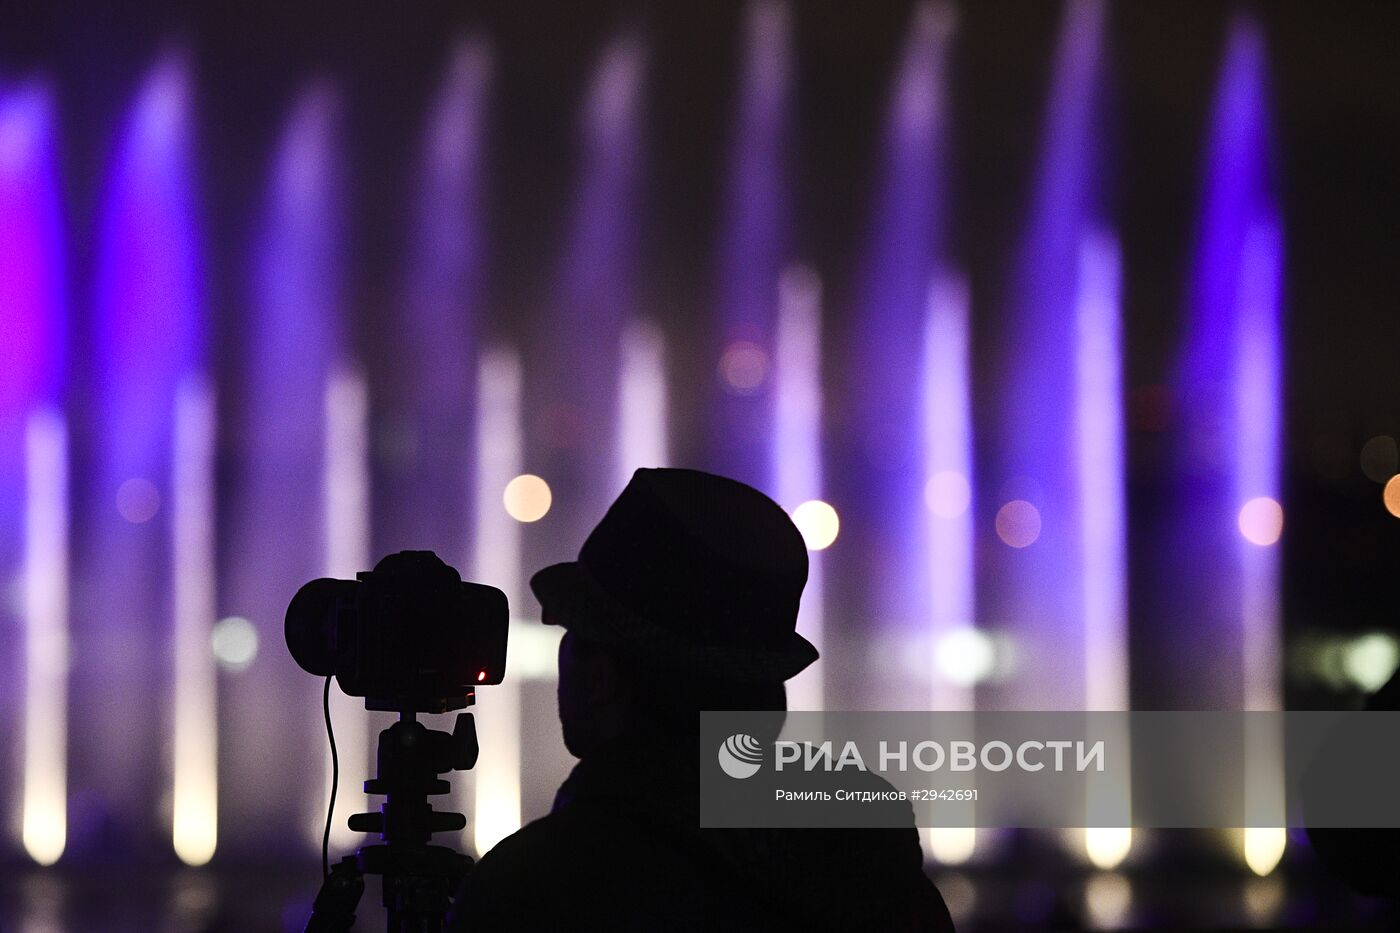 Репетиция мультимедийного шоу в рамках московского международного фестиваля "Круг света" 2016